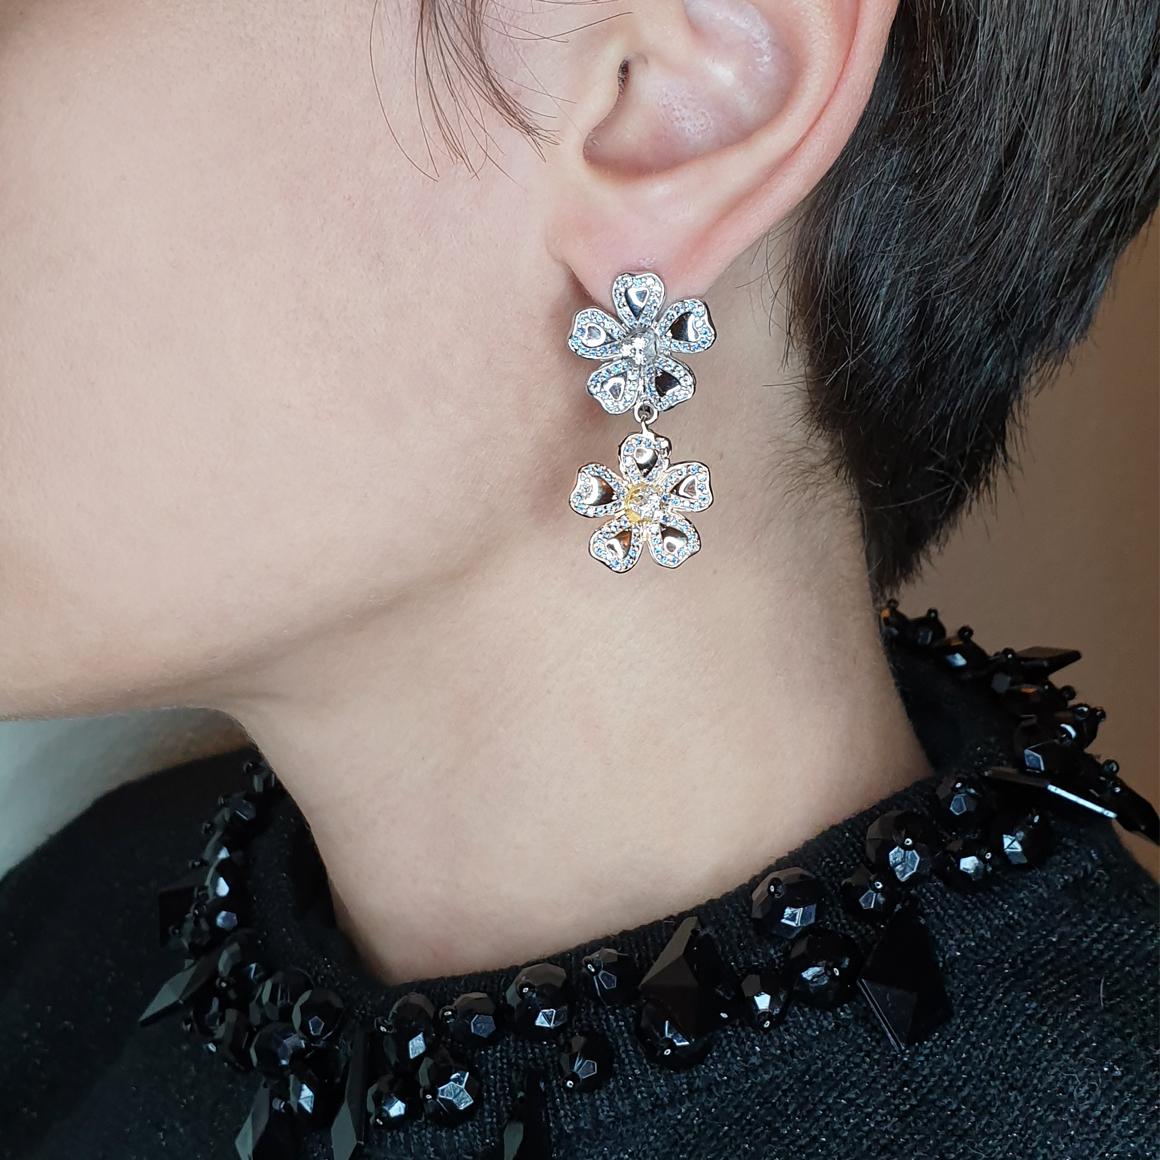 Eine Blume ist gerade erblüht! Inspiriert von der Schönheit der Natur, sehr einzigartige Ohrringe, die seit 1948 in Italien von Stanoppi Jewellery hergestellt werden.

Ohrringe aus 18k Weiß- und Roségold mit Tansanit (Rundschliff, Größe mm.1,25) und